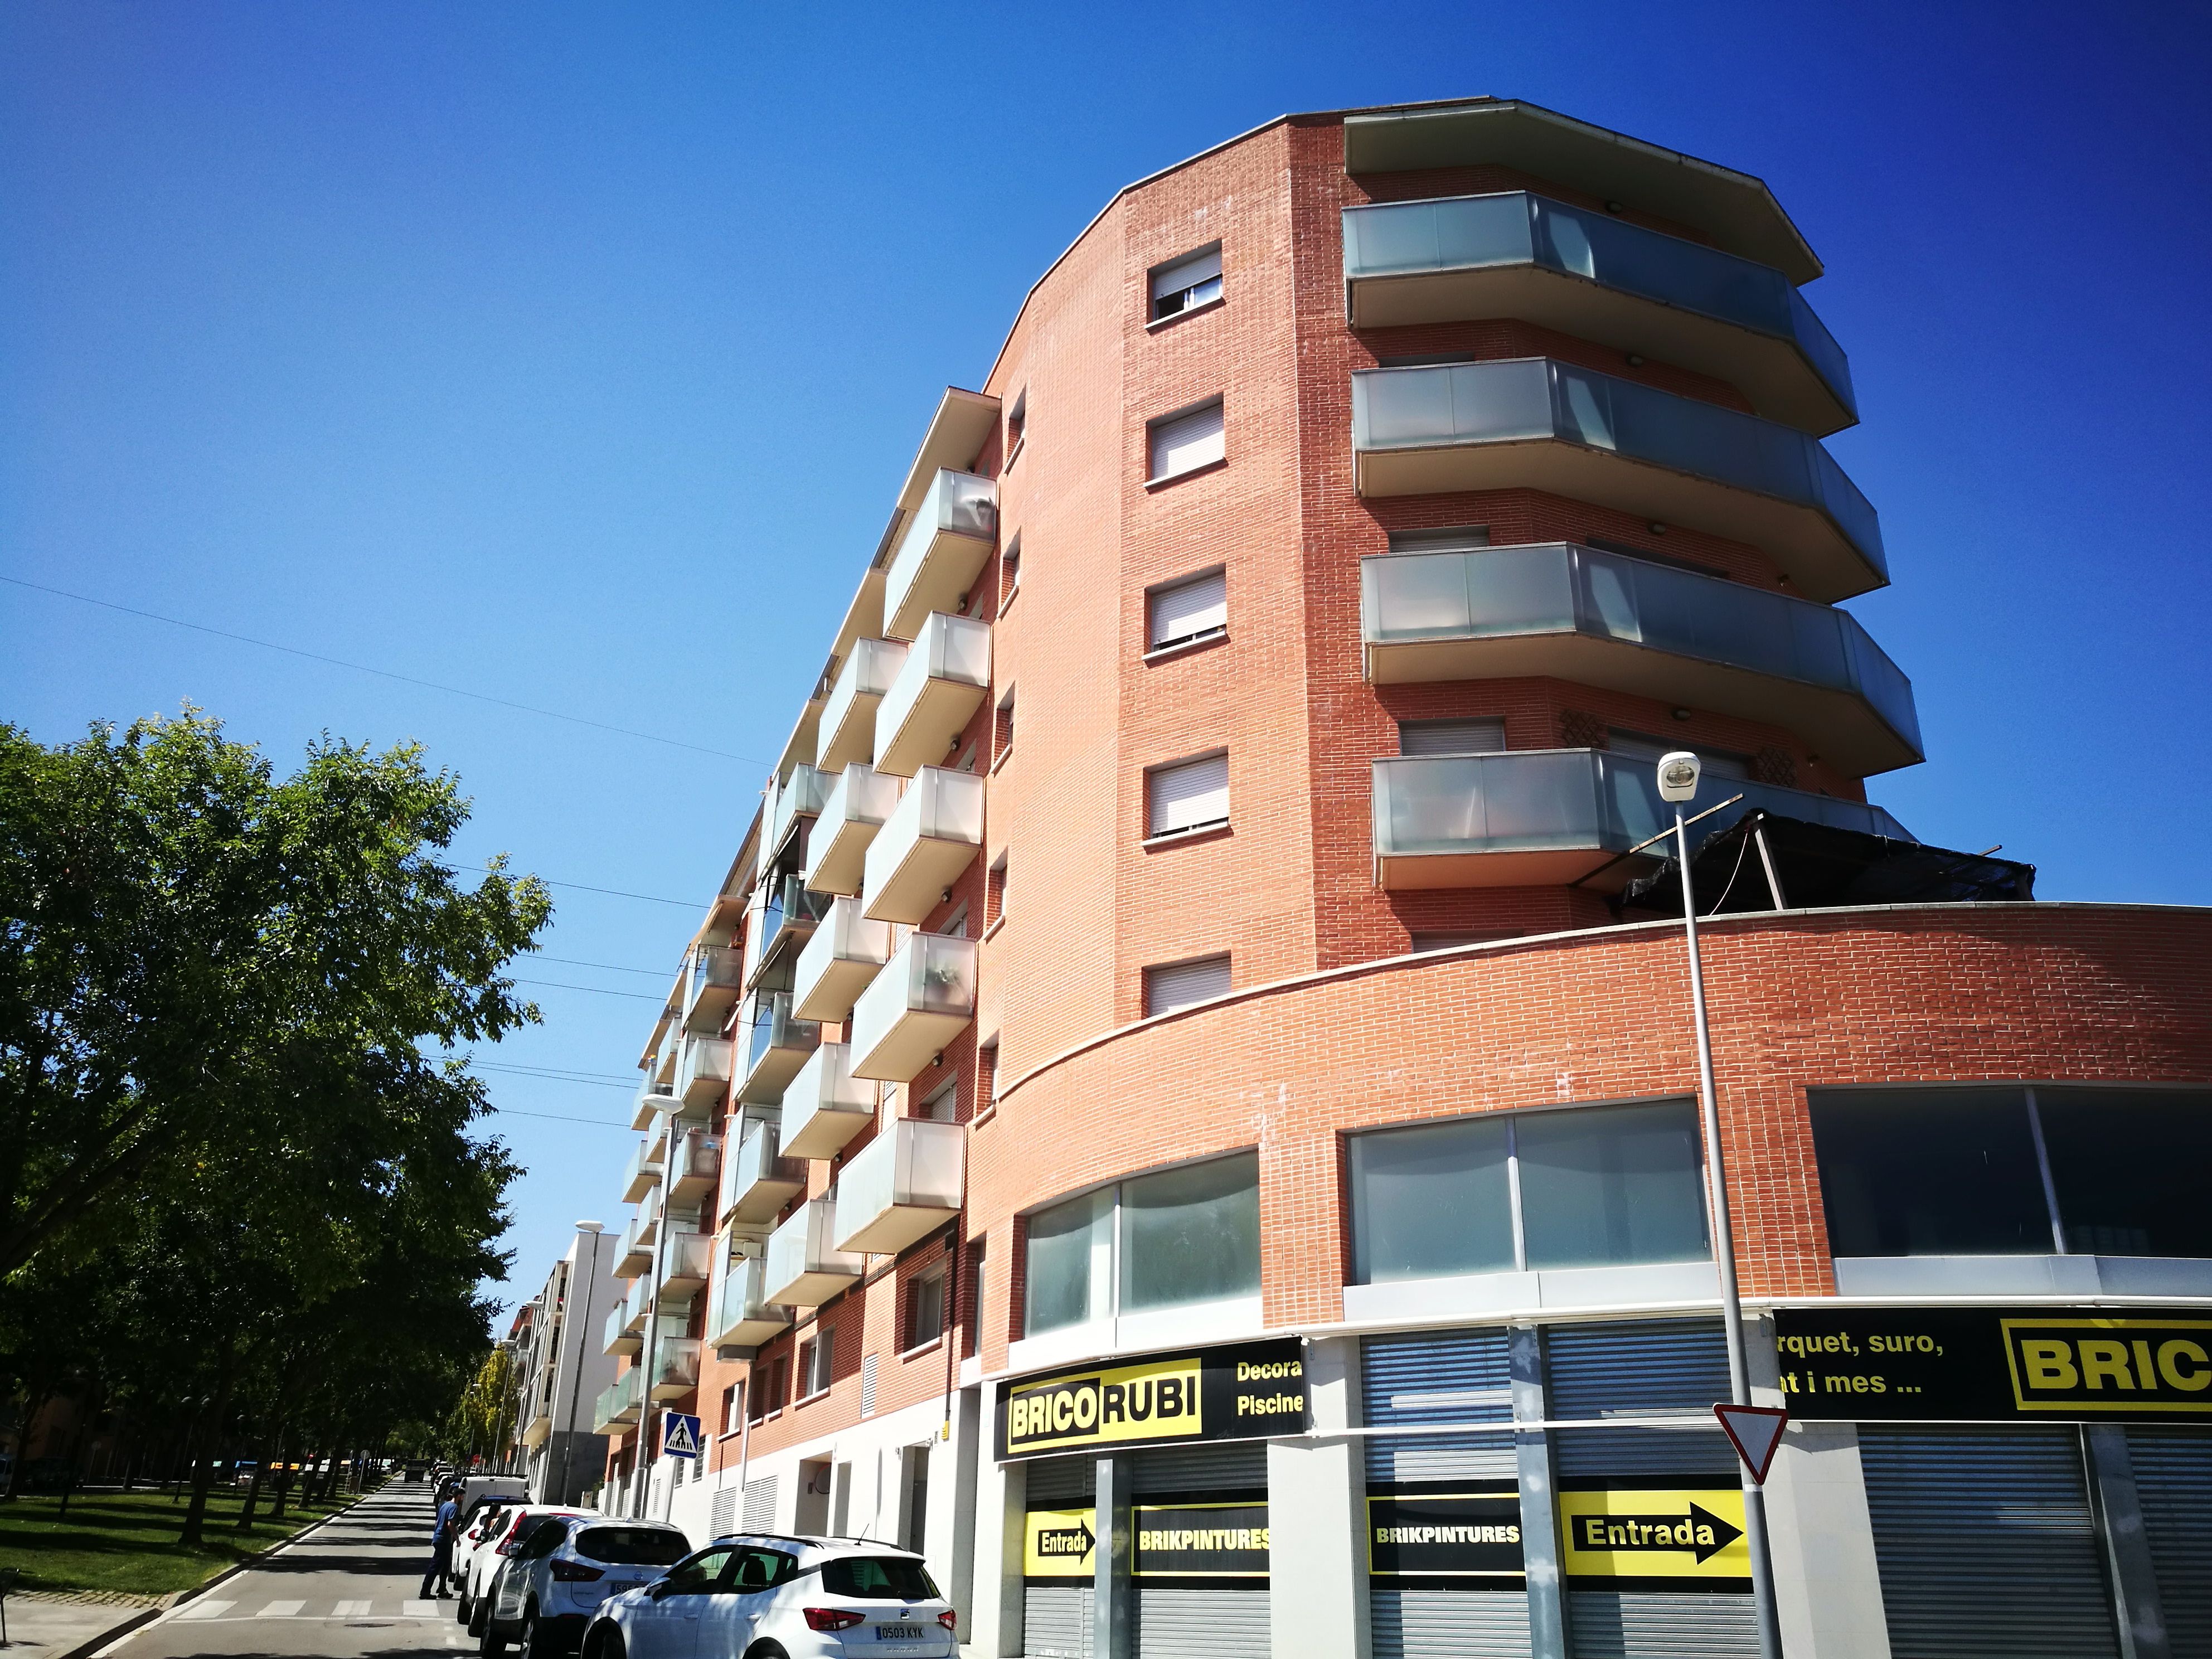 Edifici de pisos de l’avinguda Ferrer i Domingo, a Rubí